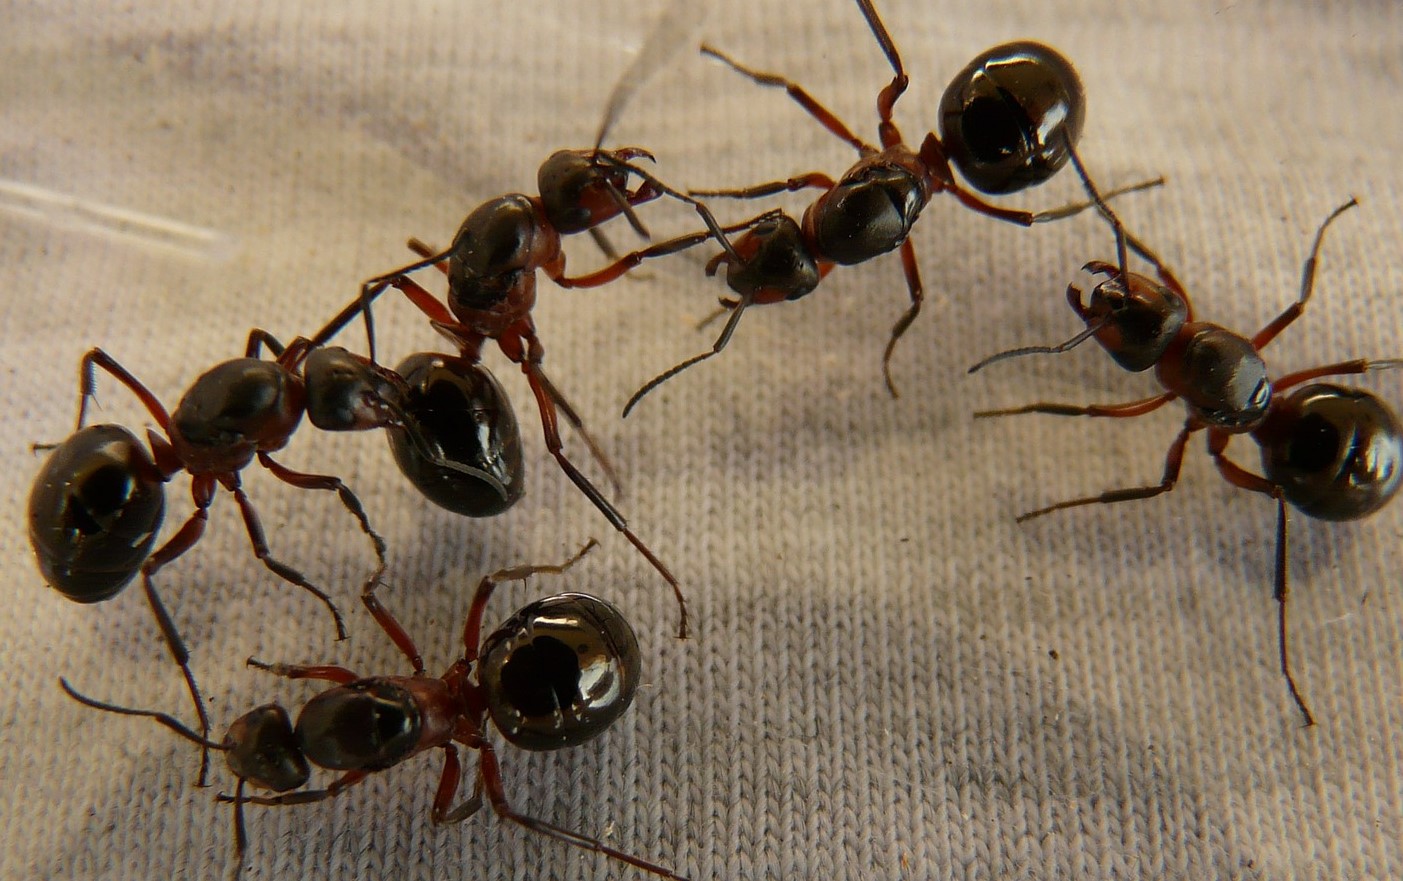 Ants in a dream6 - situ web egizianu